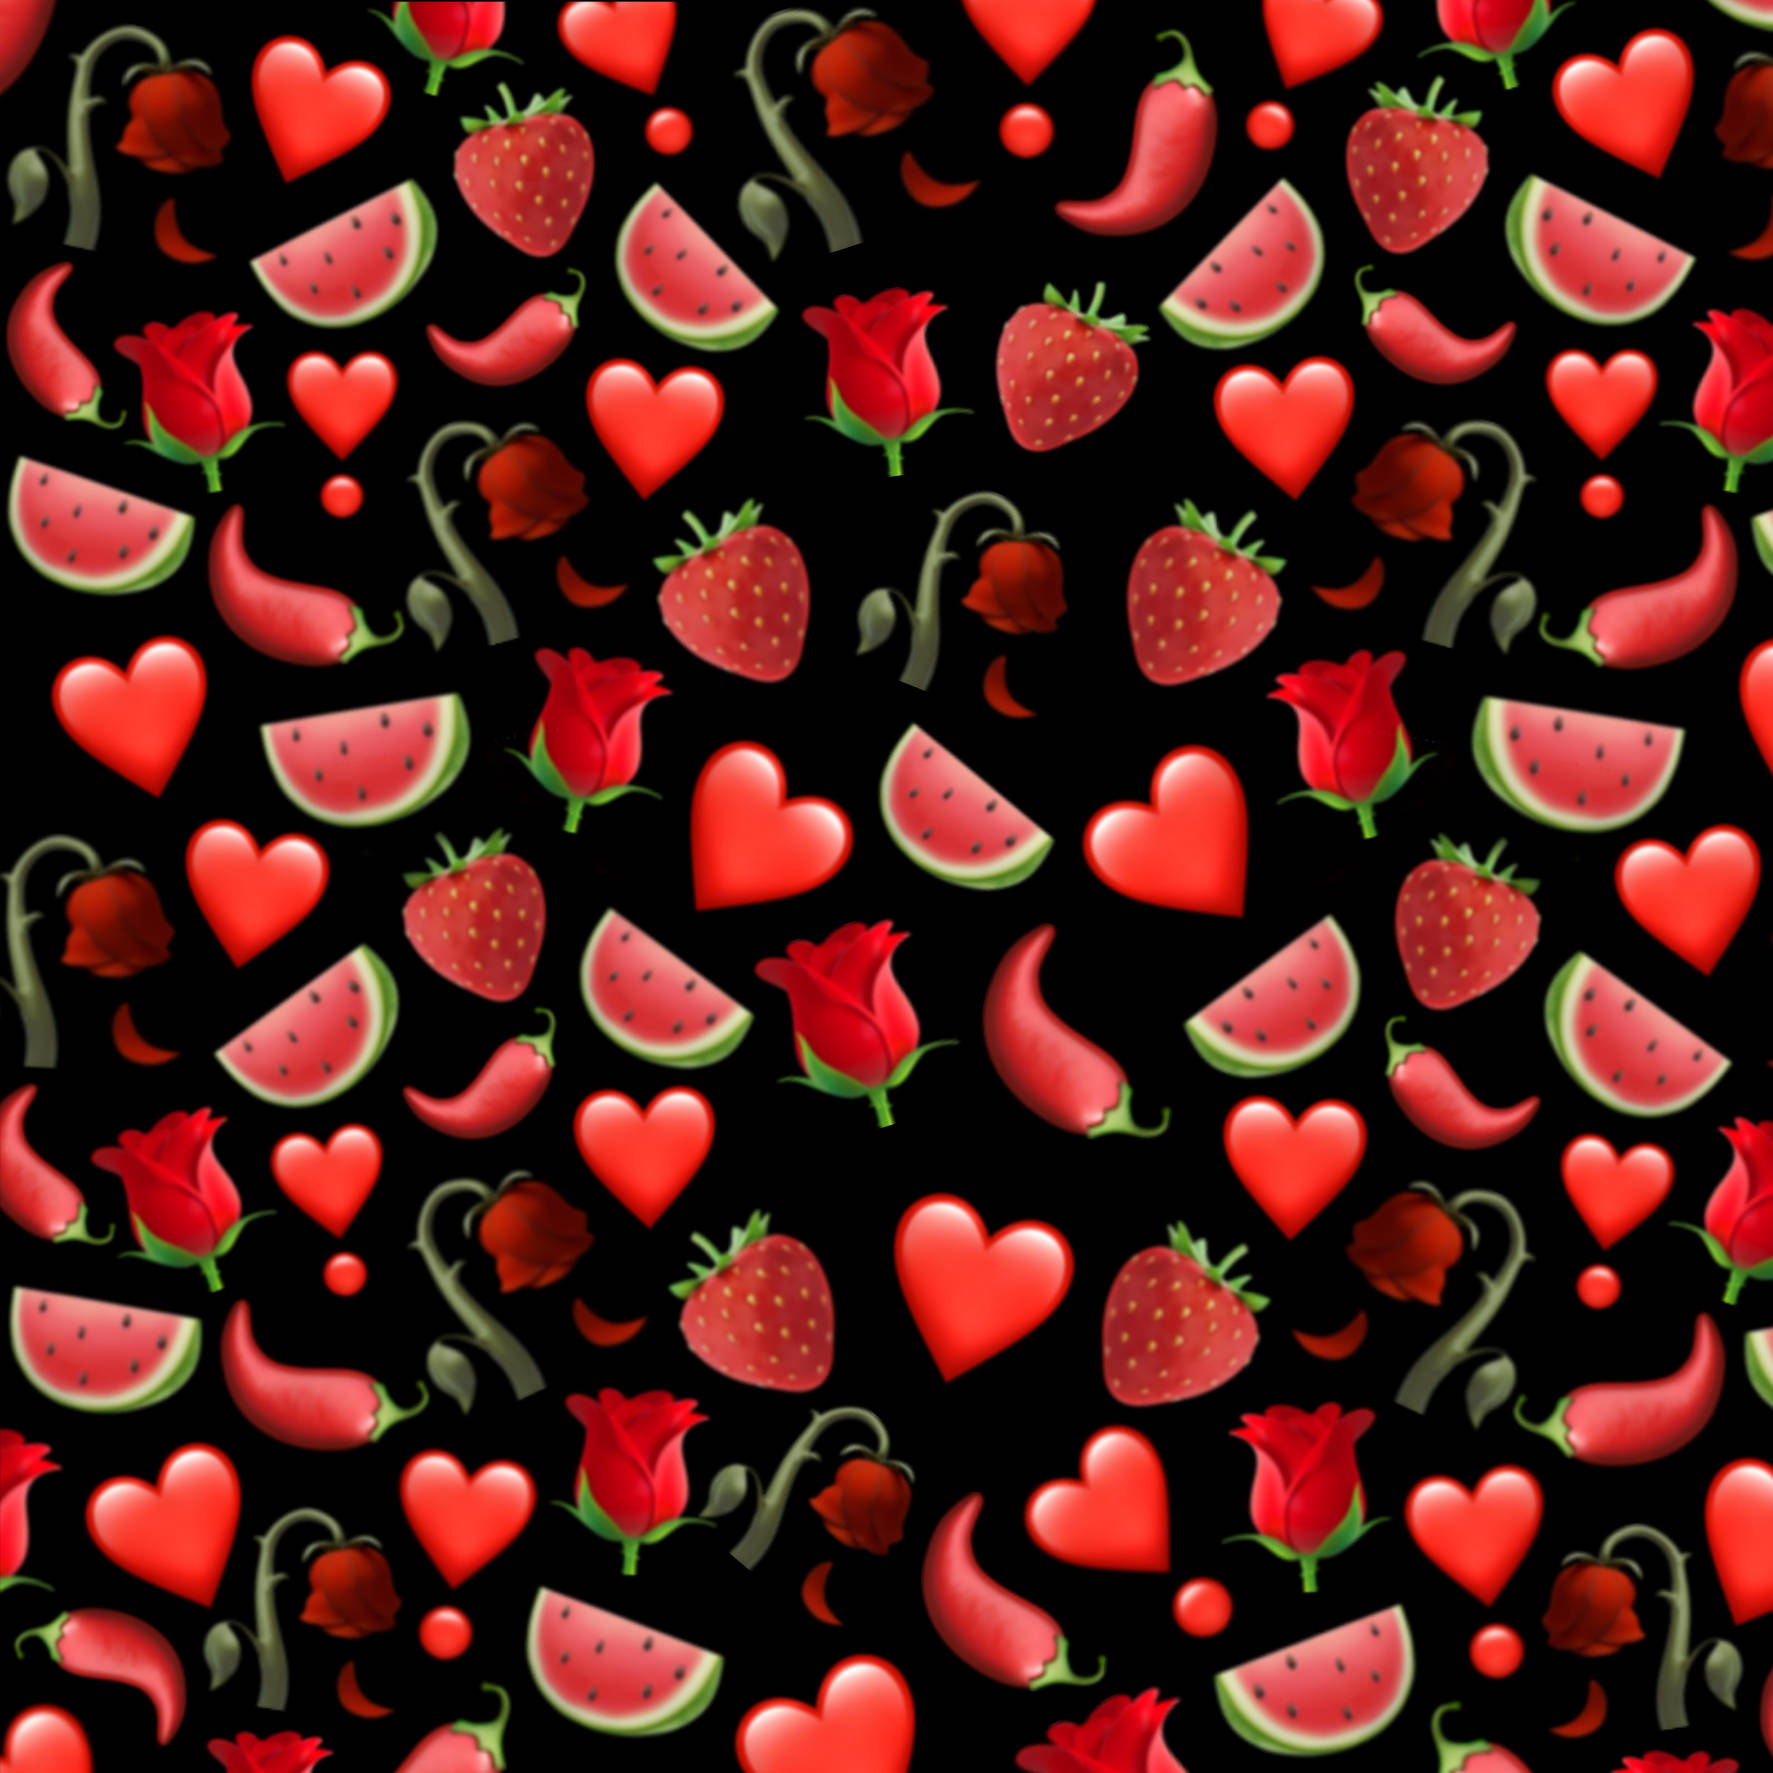 Sød lækker jordbær fyldt med levende farver og søde smage. Wallpaper